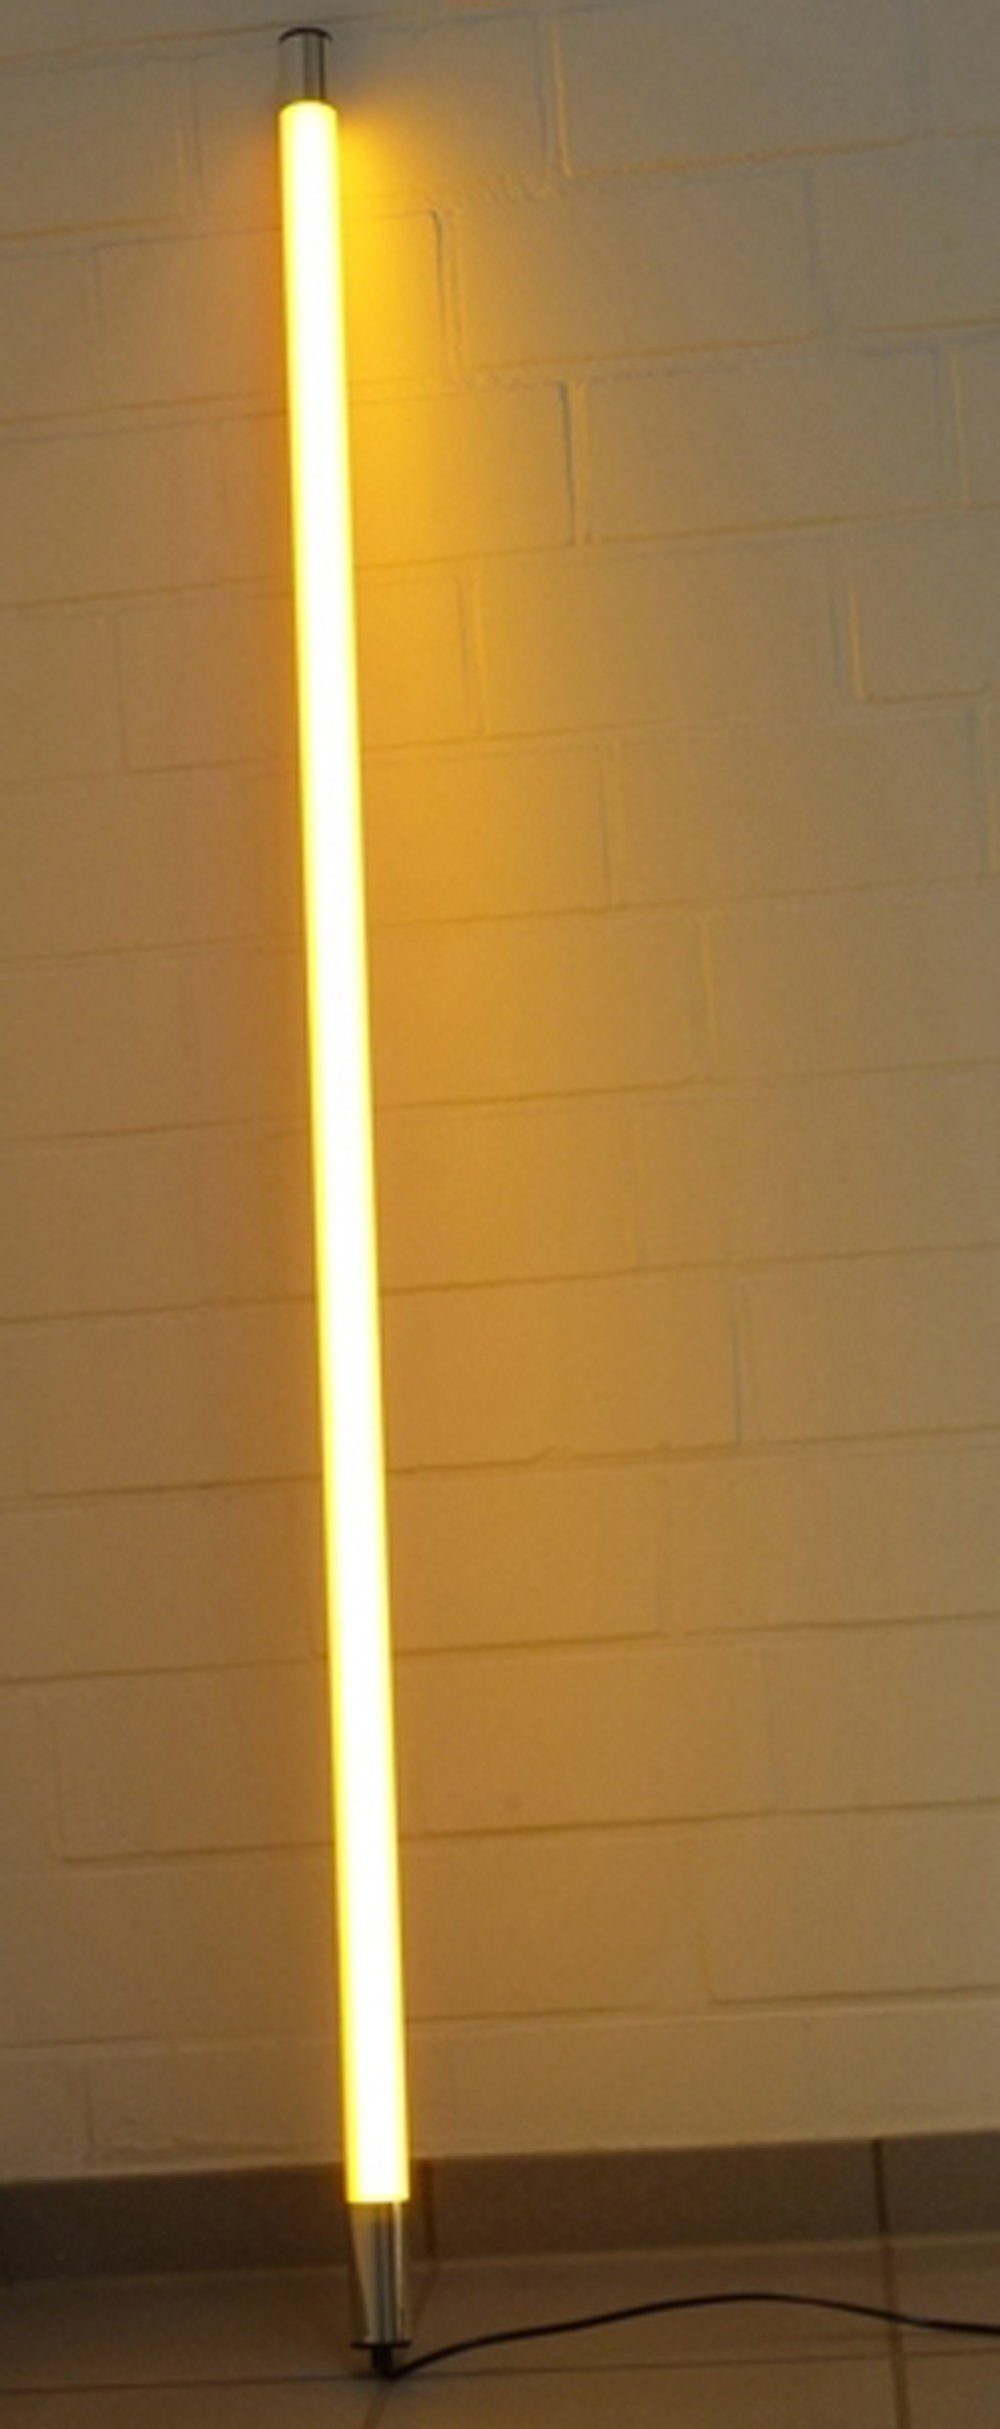 XENON LED Wandleuchte LED Leuchtstab Satiniert 0,63m Länge 950 Lumen IP44 für Außen Orange, LED Röhre T8, Xenon